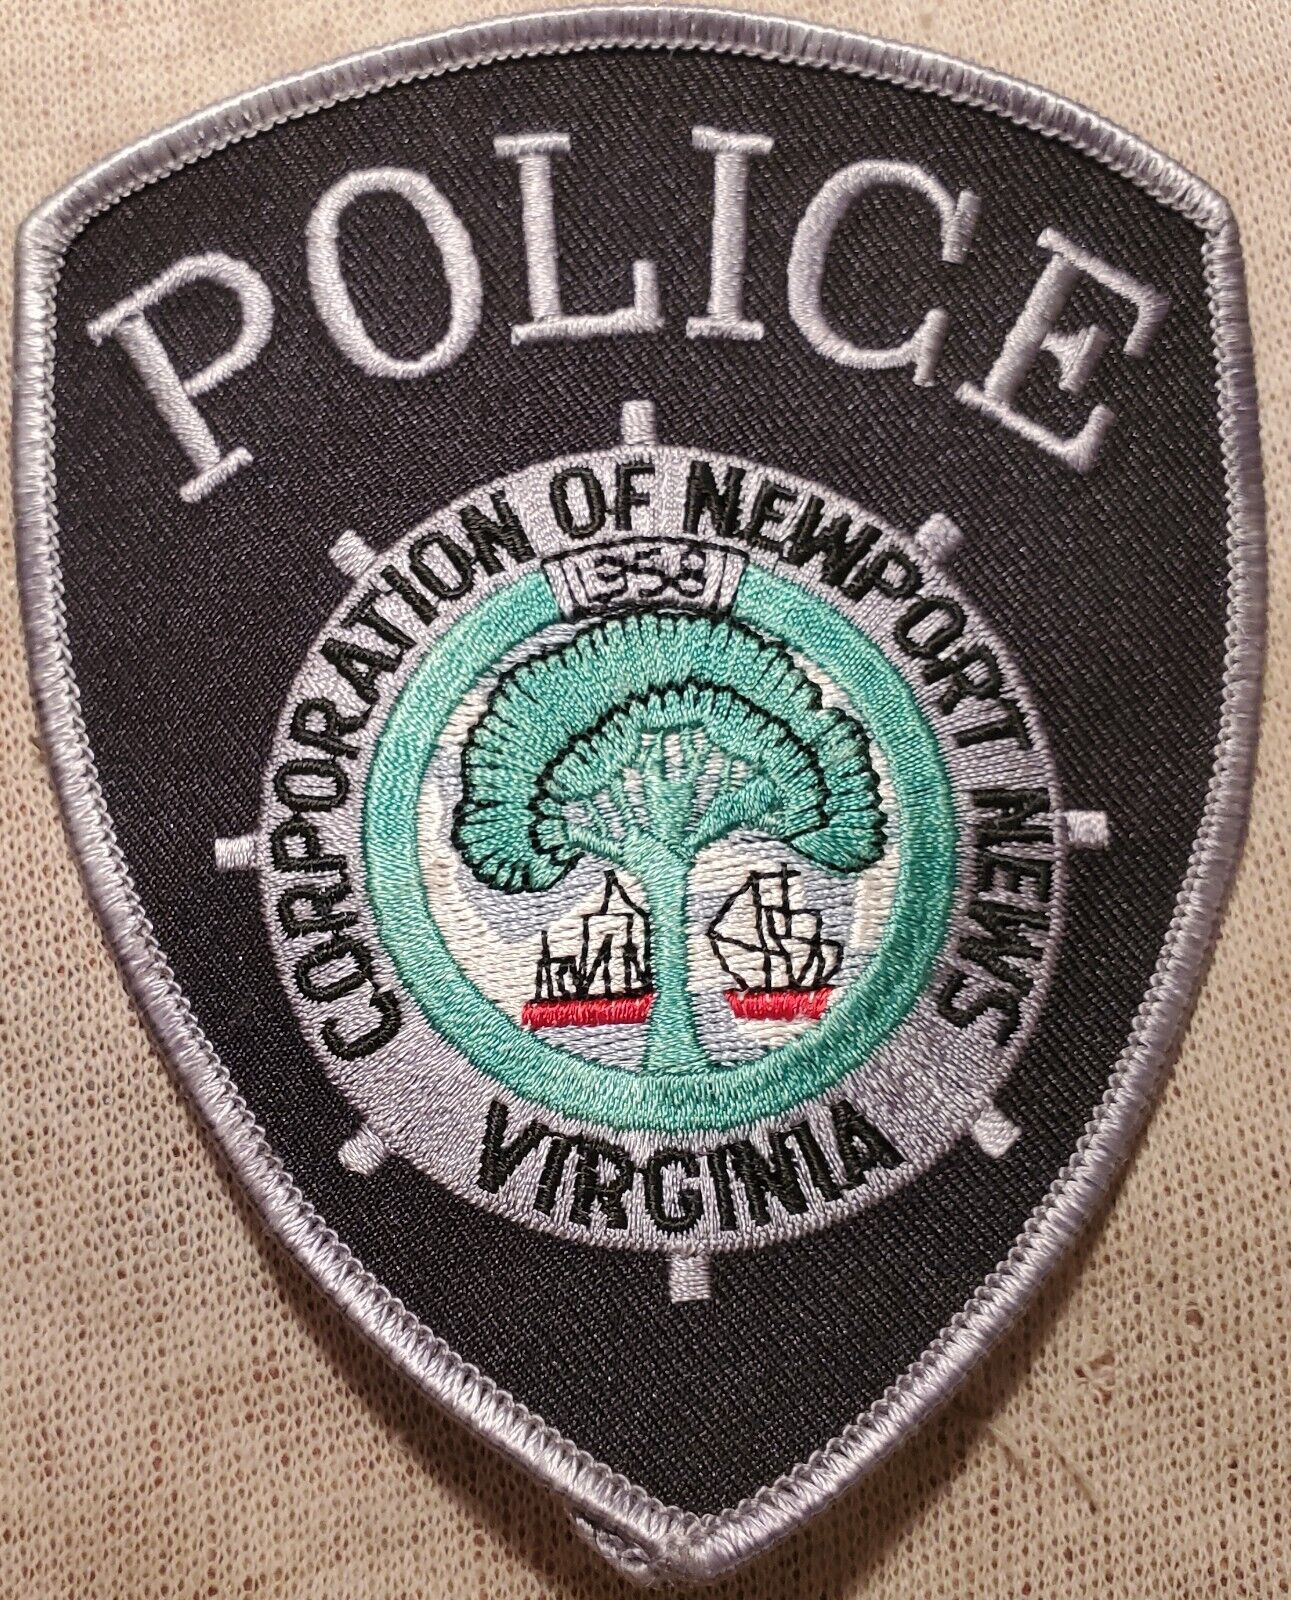 VA Newport News Virginia Police Shoulder Patch (Silver Border)